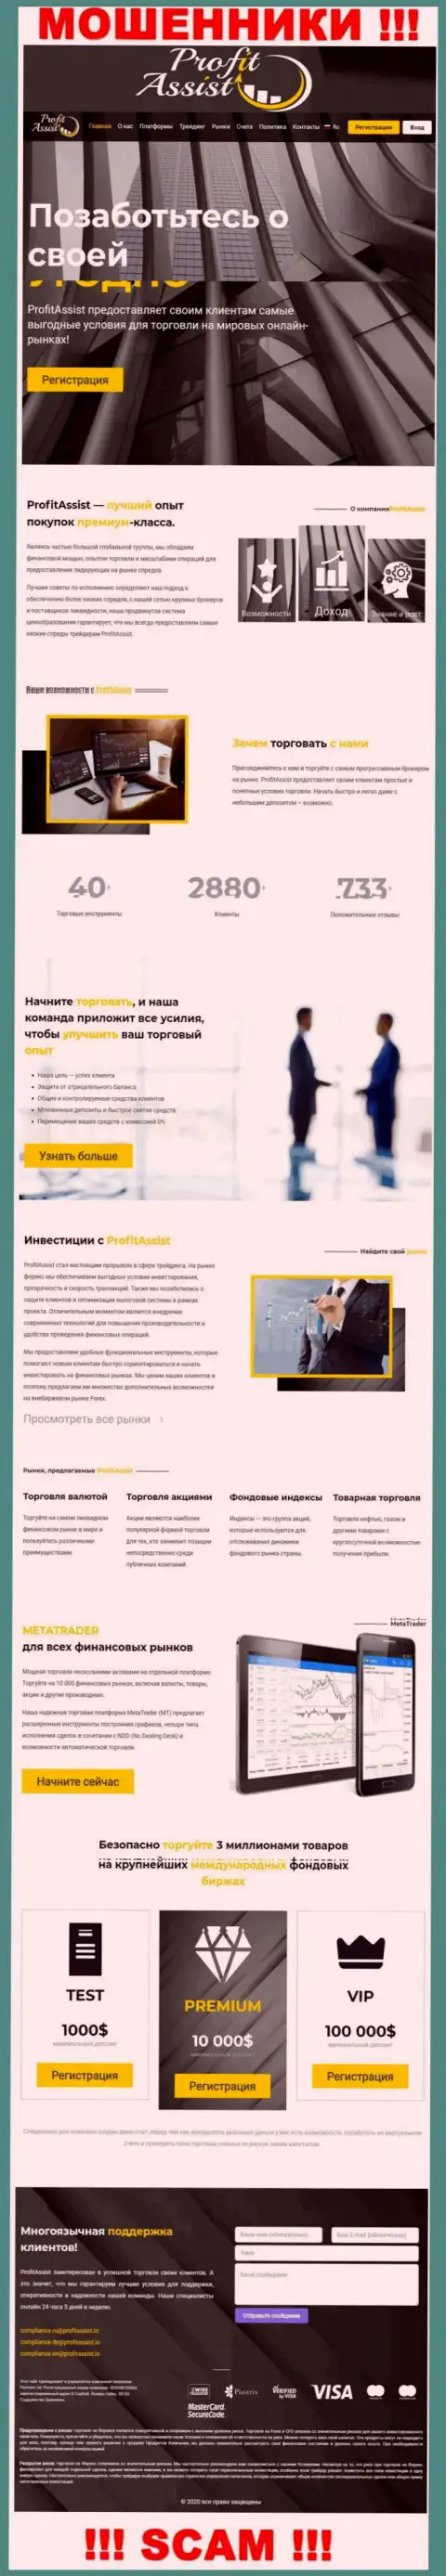 ProfitAssist Io - официальный веб-сайт мошенников ПрофитАссист Ио